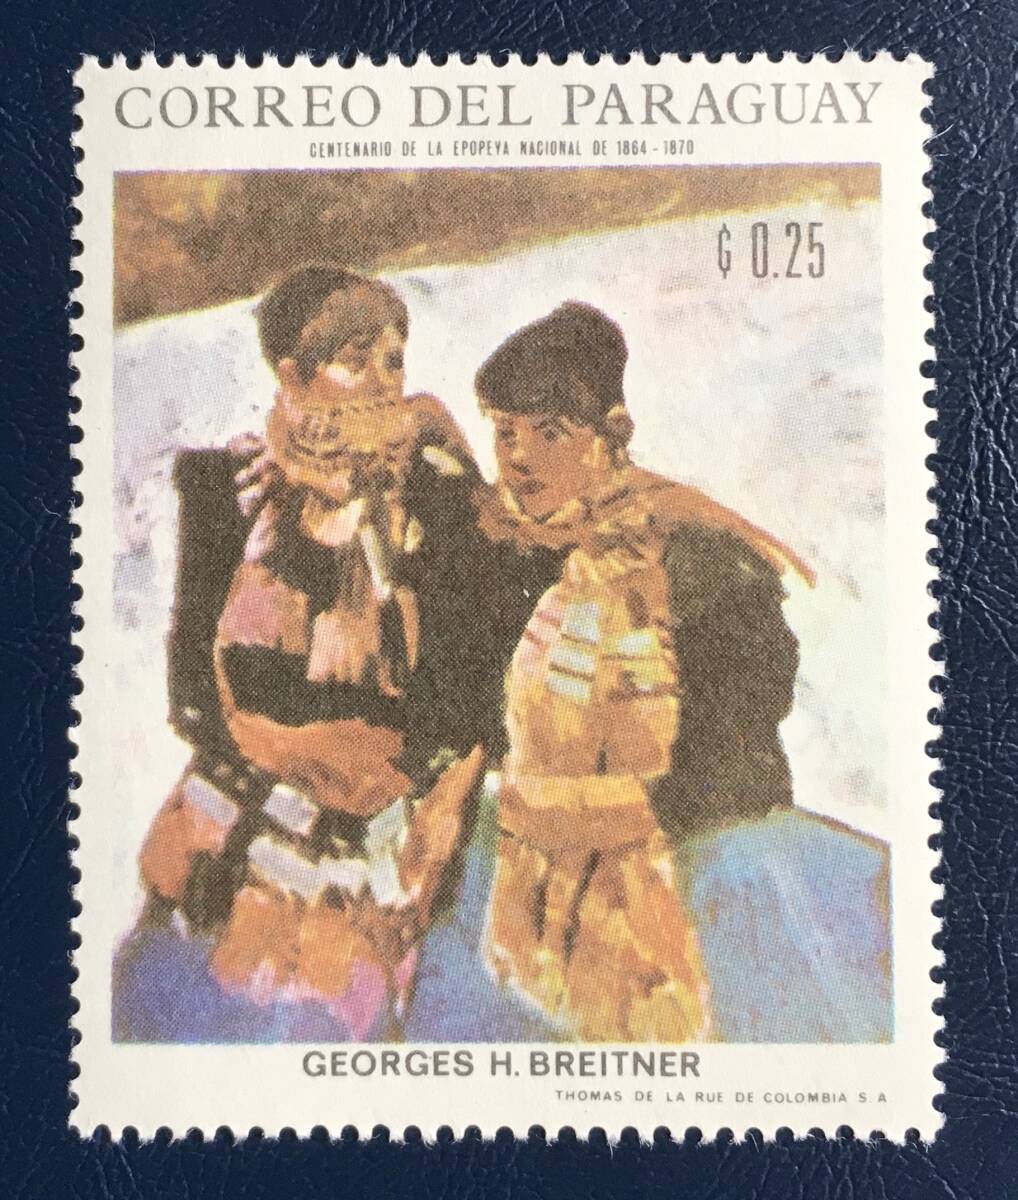 [चित्र टिकट] पैराग्वे 1968 हॉर्ज हेंड्रिक ब्रेइटनर शीतकालीन लैंडस्केप प्रकार 1 अप्रयुक्त अच्छी स्थिति, एंटीक, संग्रह, टिकट, पोस्टकार्ड, दक्षिण अमेरिका